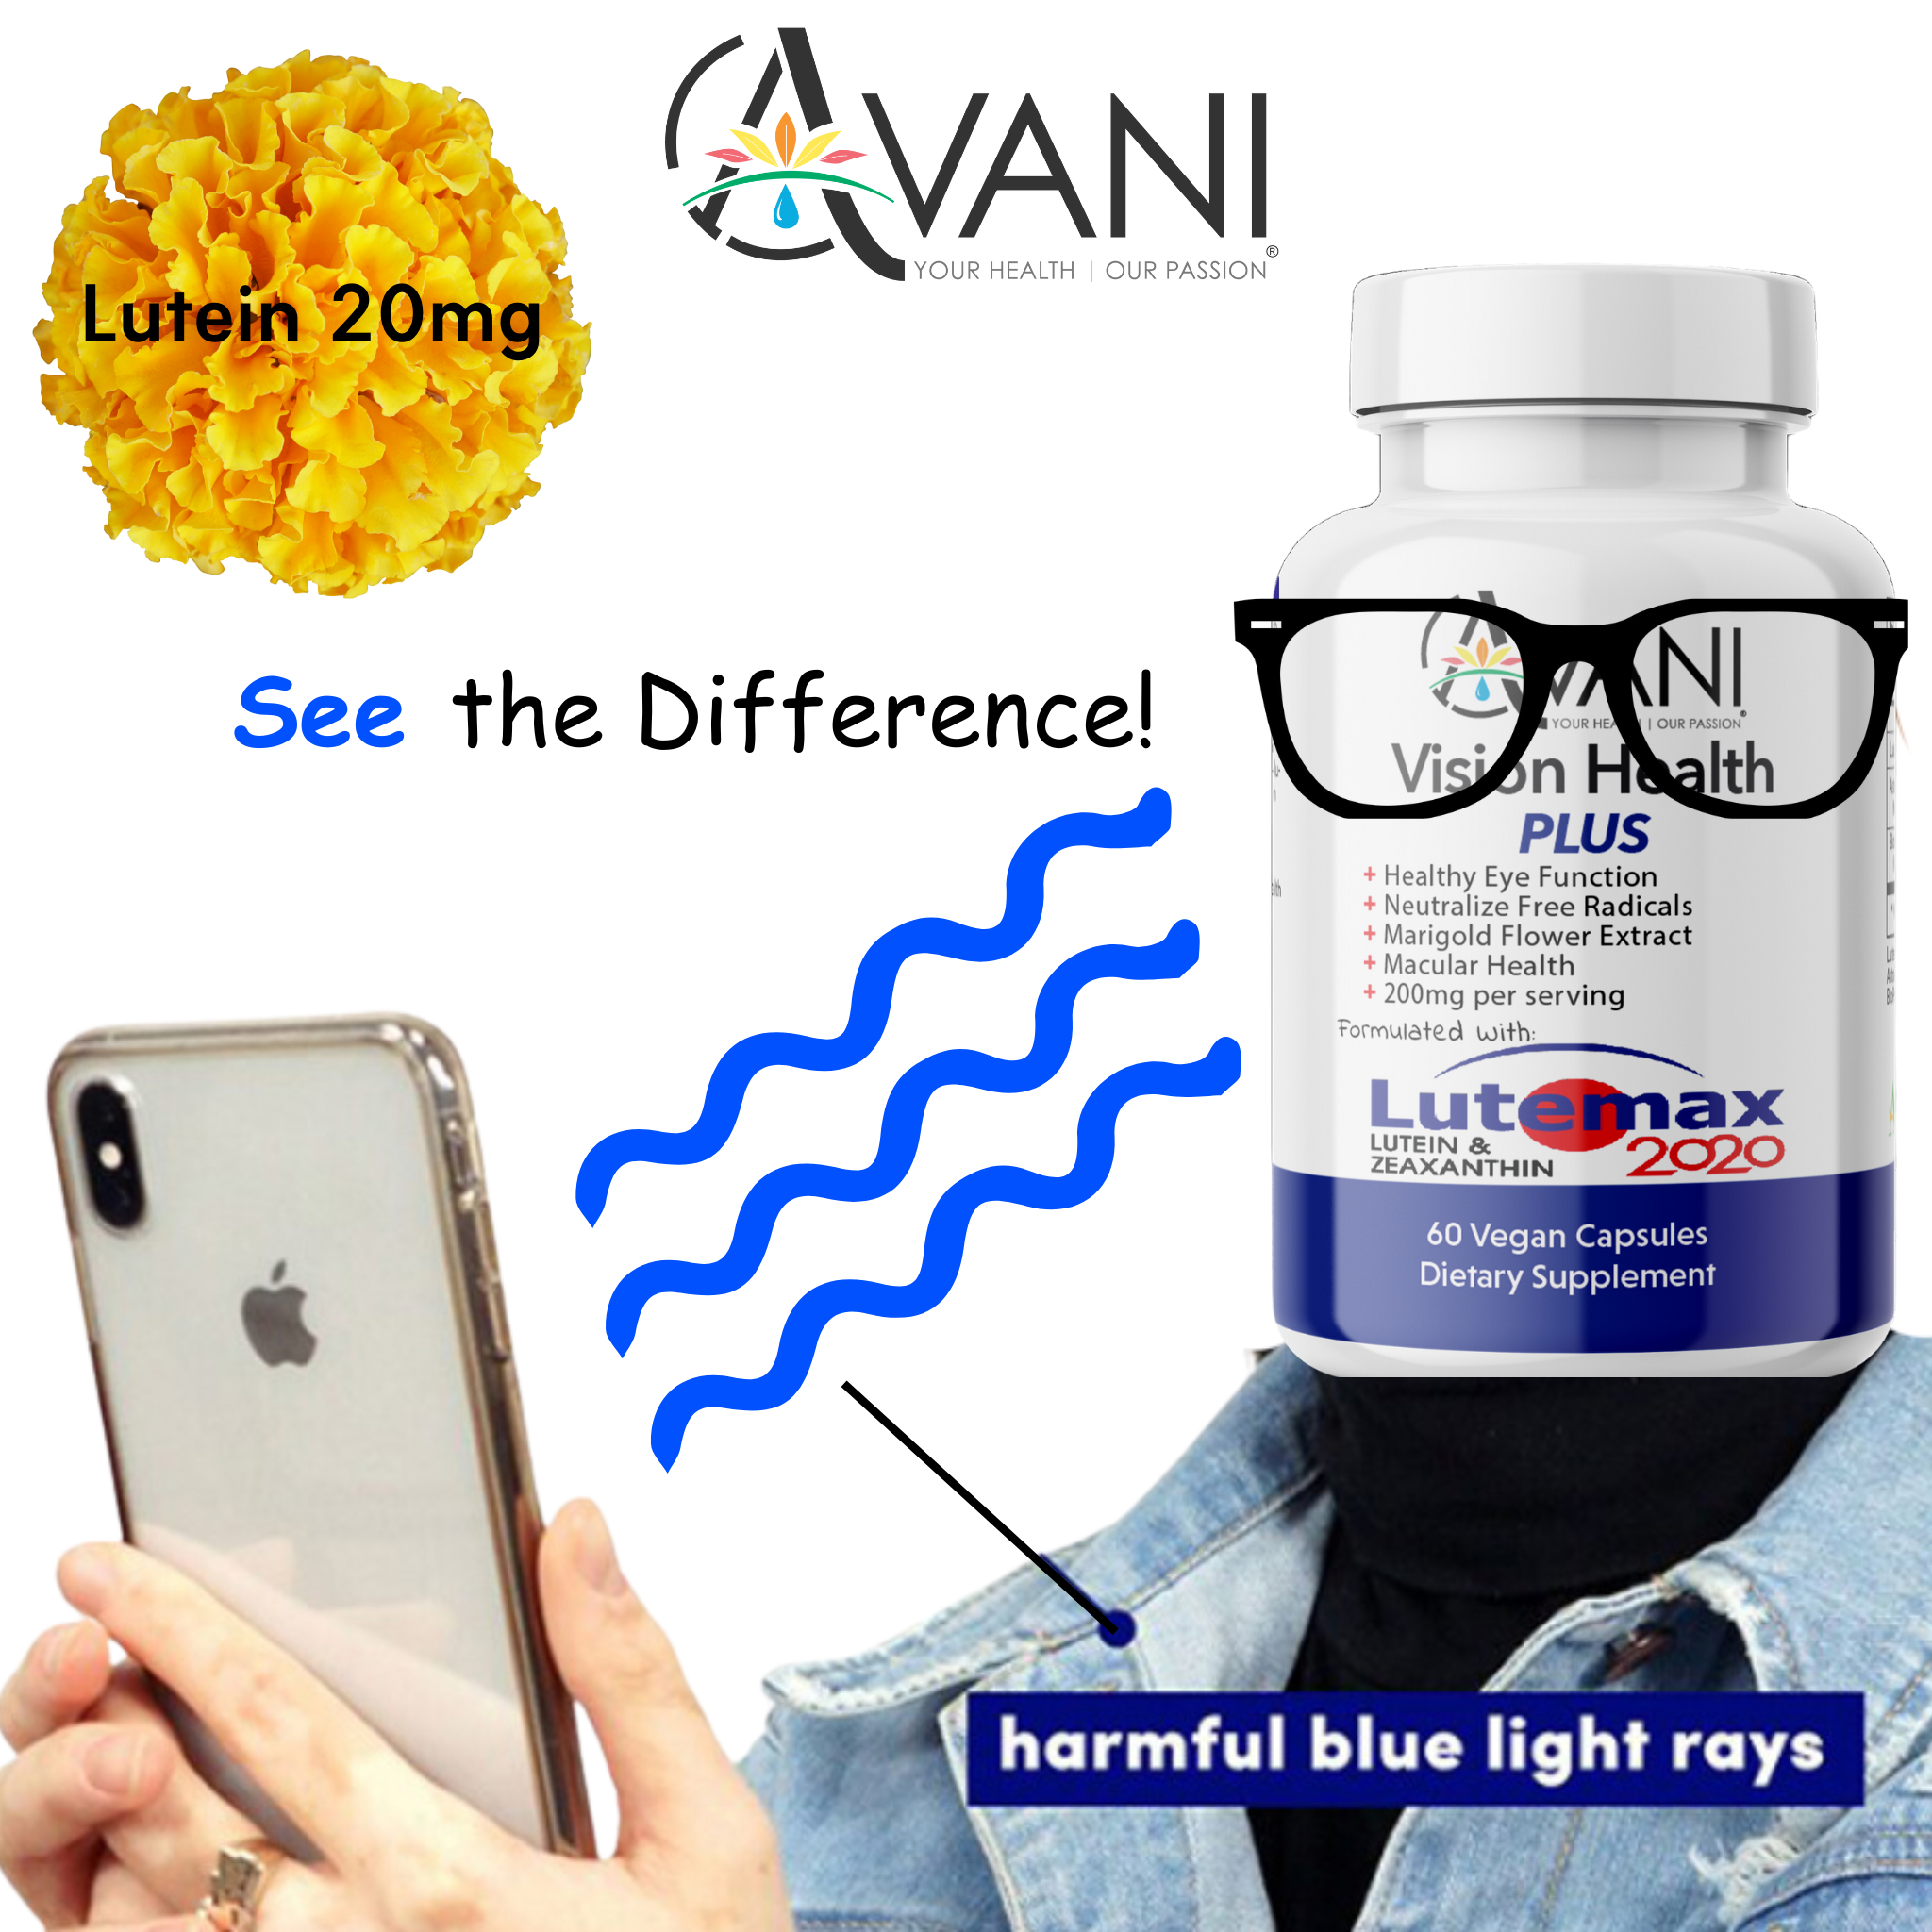 Lutemax 2020 - Lutein & Zeaxanthin - Avani Wellness